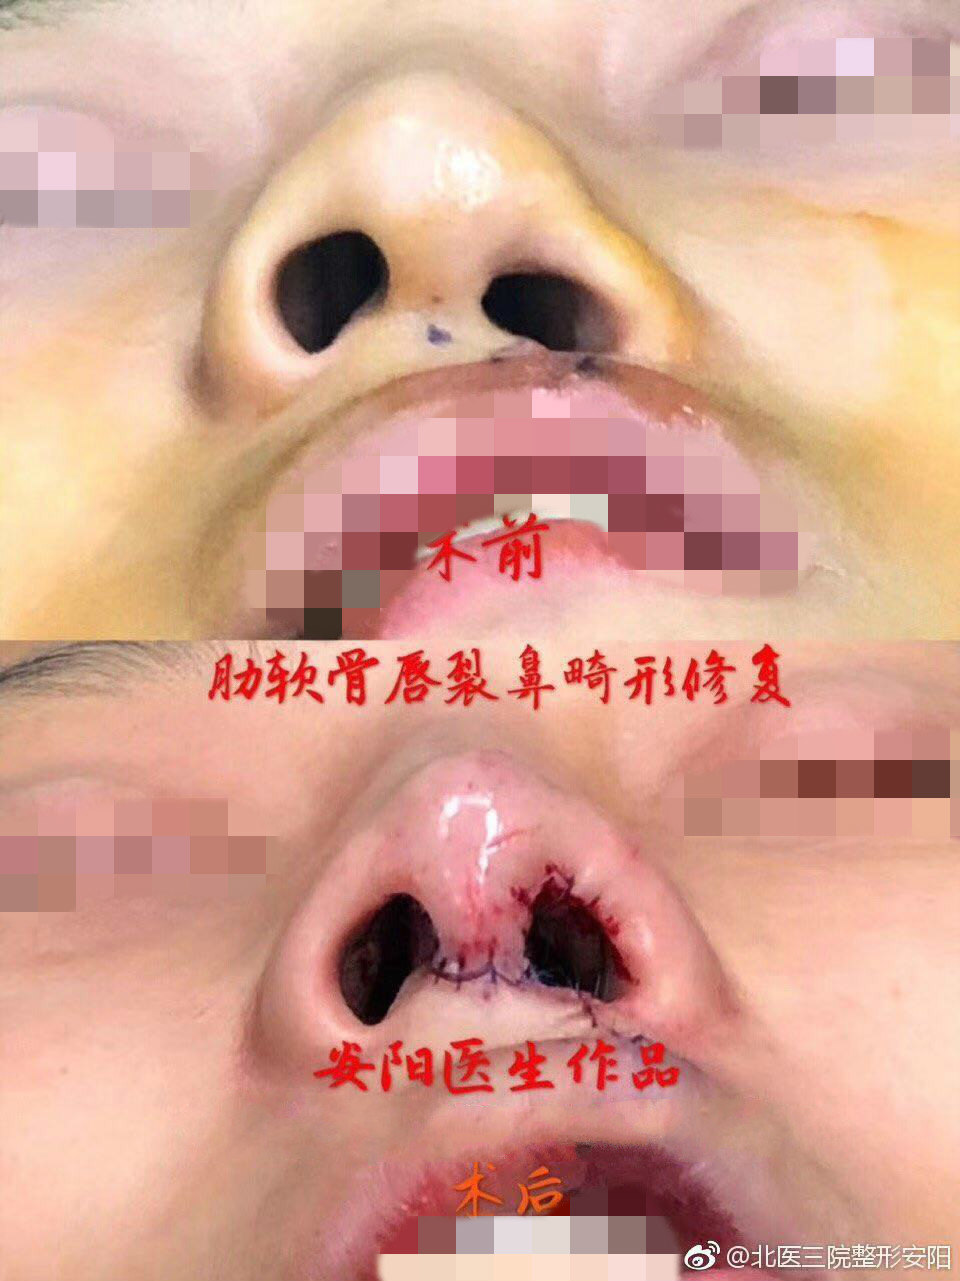 安阳 文章列表  今日份案例分享: 用户术前: 唇裂 鼻畸形 手术方案:全